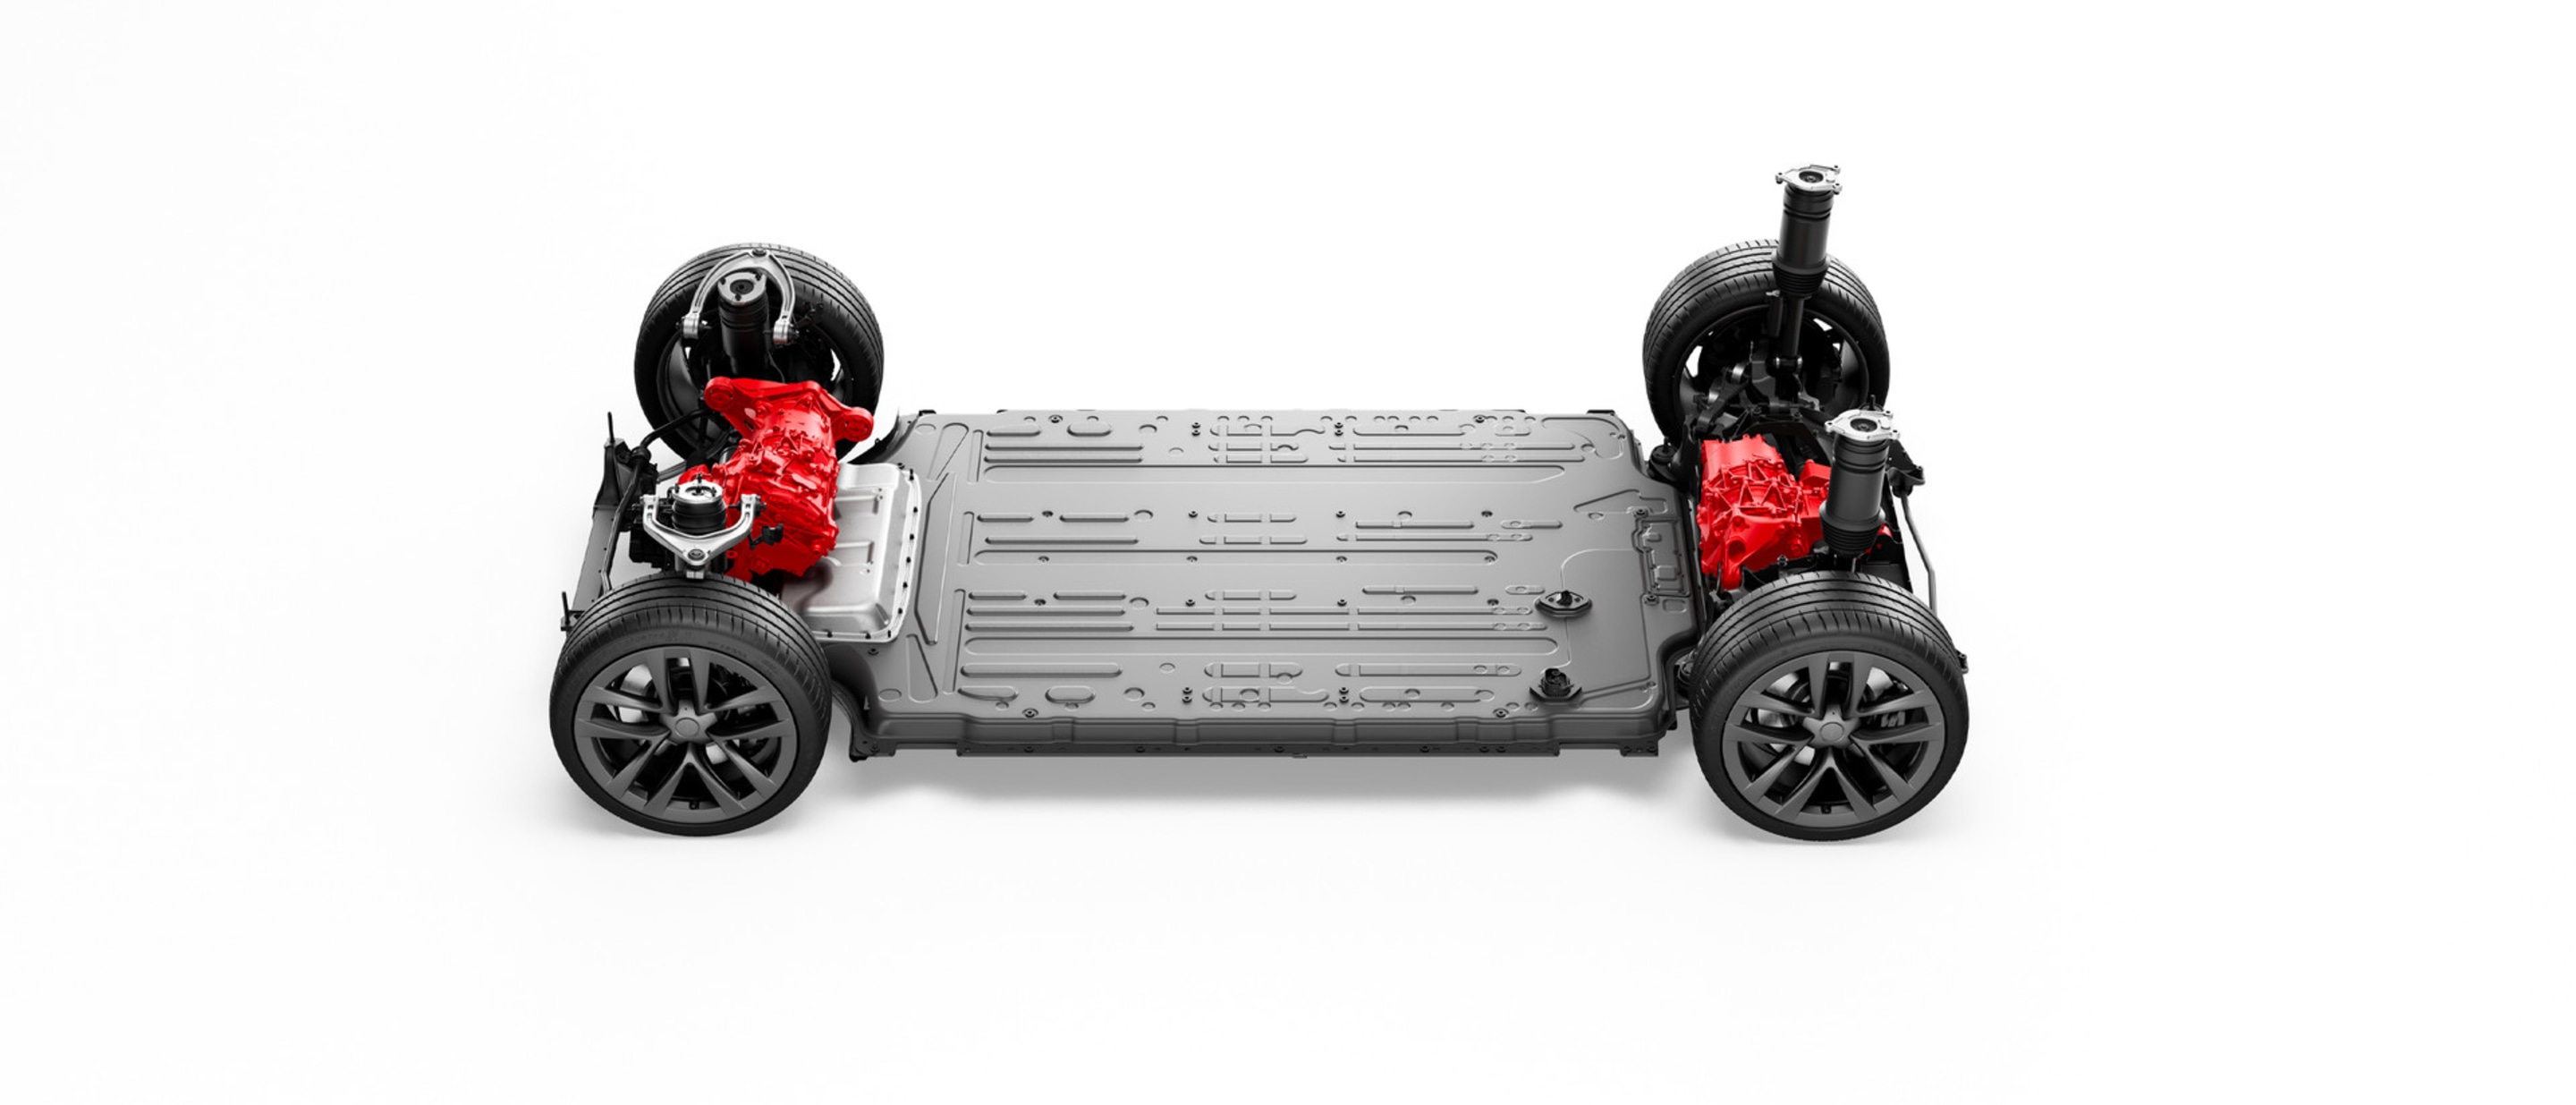 Elektryczny układ napędowy i bateria pojazdu Model S z dwusilnikowym napędem na wszystkie koła